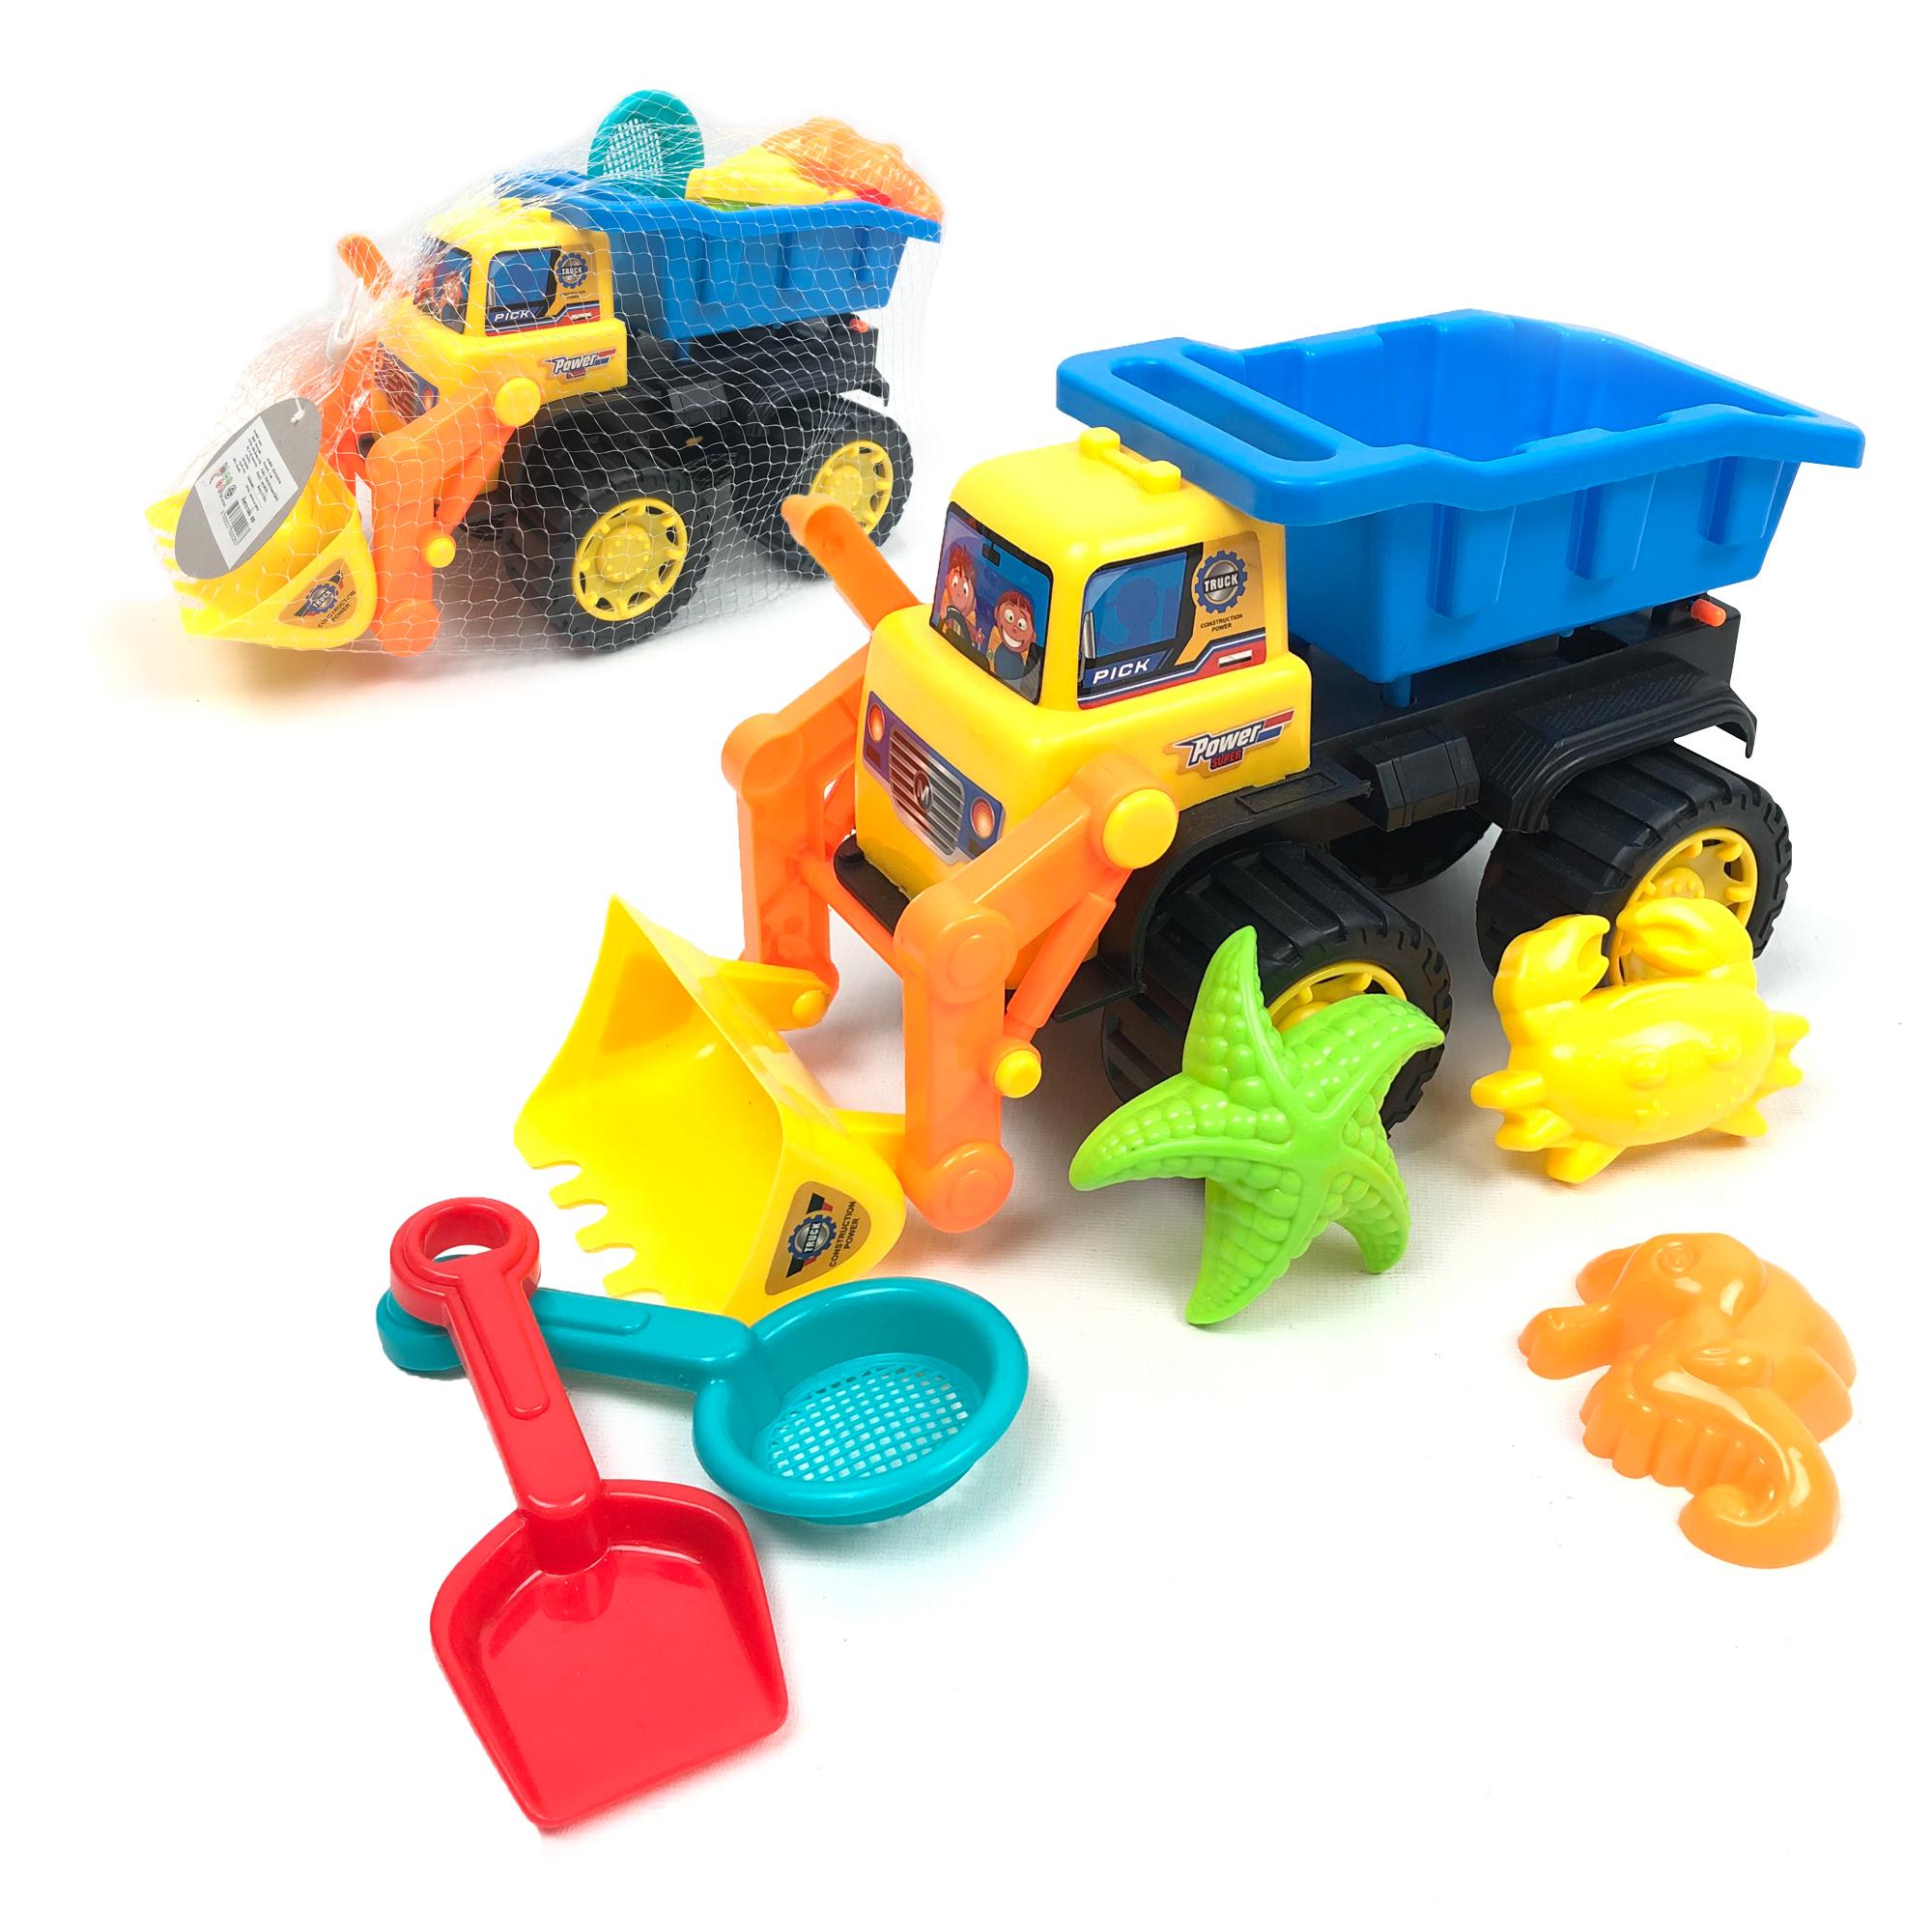 KIDTOYS ของเล่น รถบรรทุก ตักทราย สีสันสดใสอุปกรณ์ 6 ชิ้น ขนาด ยาว 30*กว้าง 15*สูง 18 ซม. ของเล่นเด็ก ของเล่นกลางแจ้ง